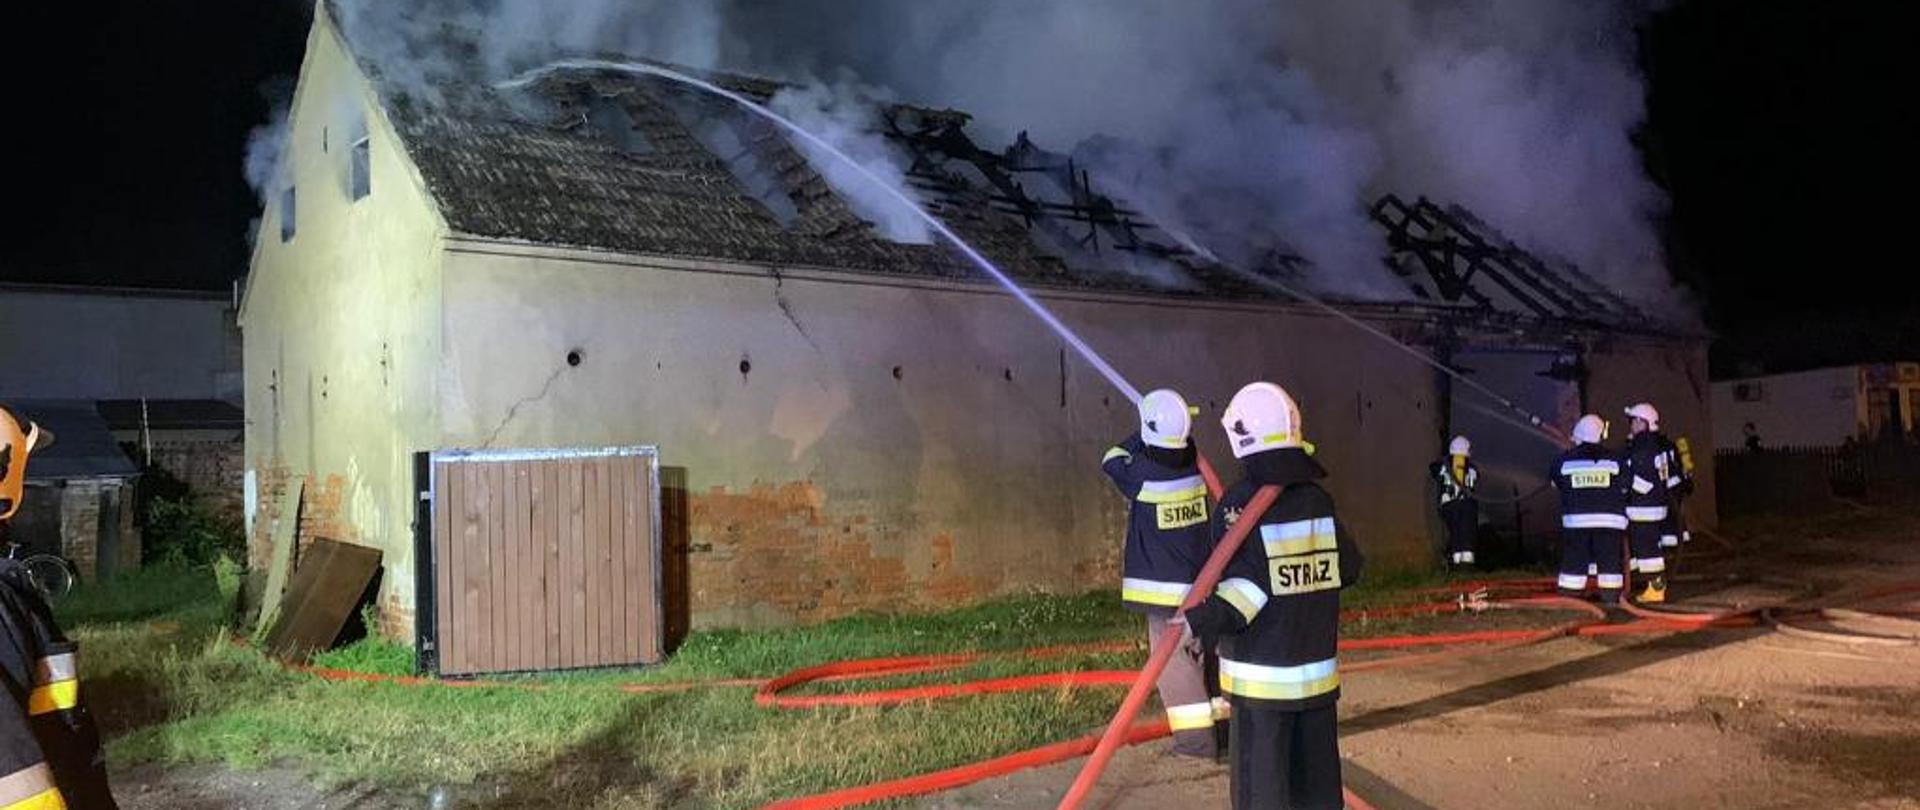 Kilu strażaków gasi pożar murowanej stodoły, jest noc, widać dym